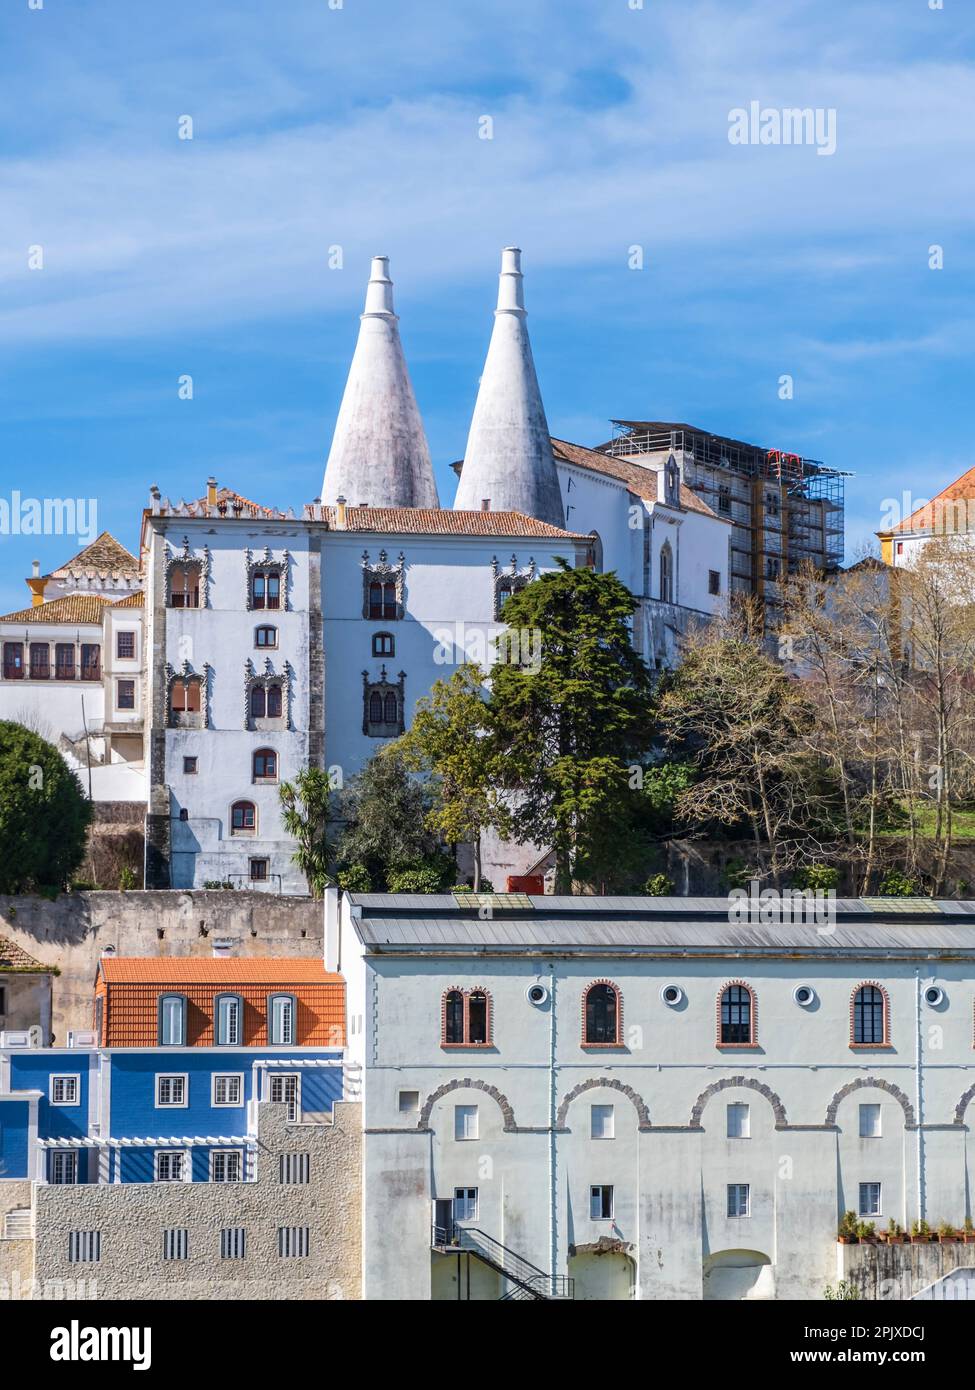 Der Nationalpalast in der historischen Stadt Sintra, in den Ausläufern des Sintra-Gebirges Portugals, in der Nähe der Hauptstadt Lissabon. Stockfoto